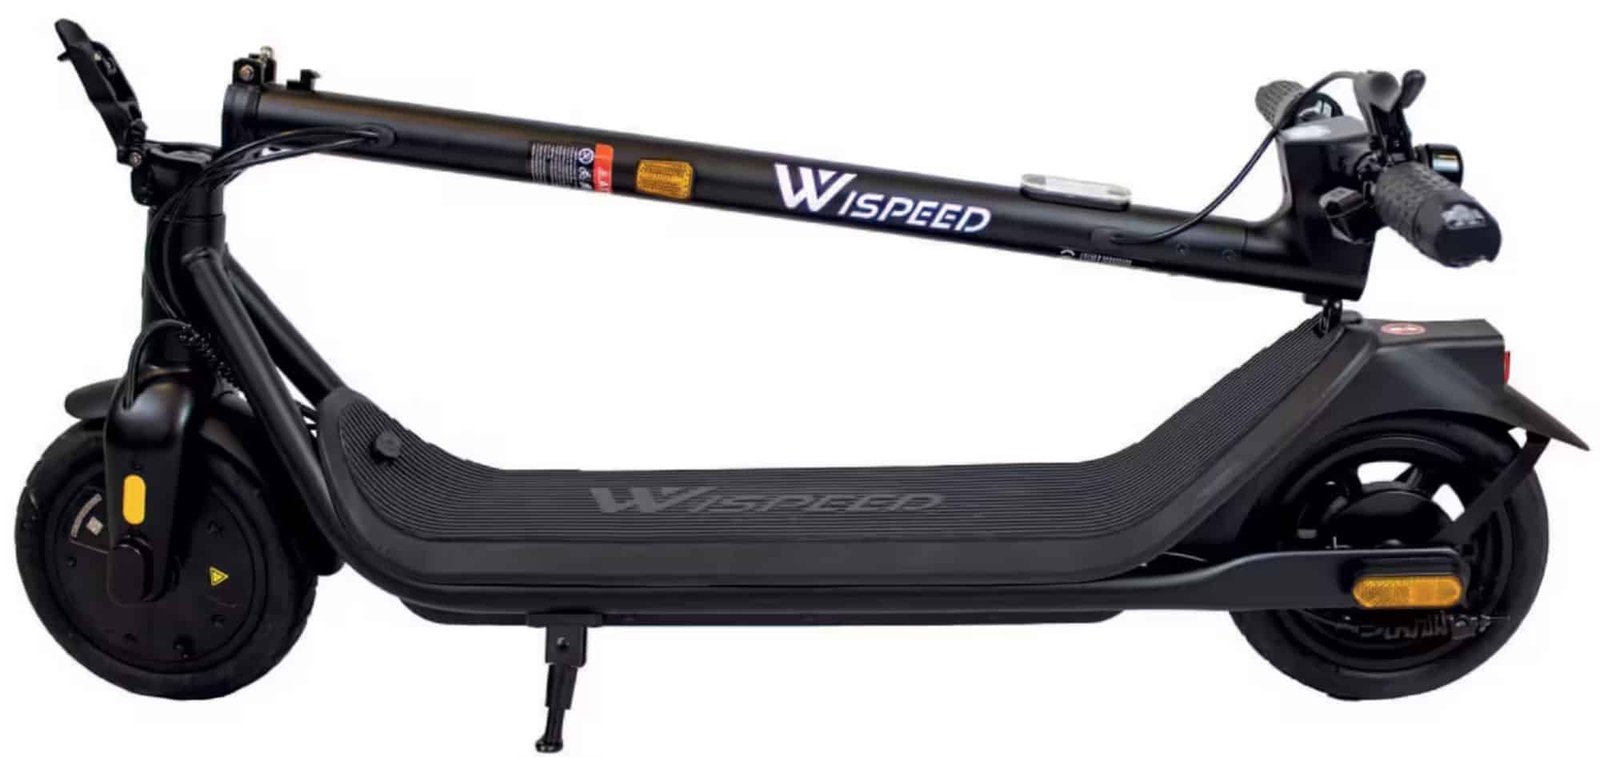 Novedad – Decathlon lanza la Wispeed C8-20, un potente patinete eléctrico